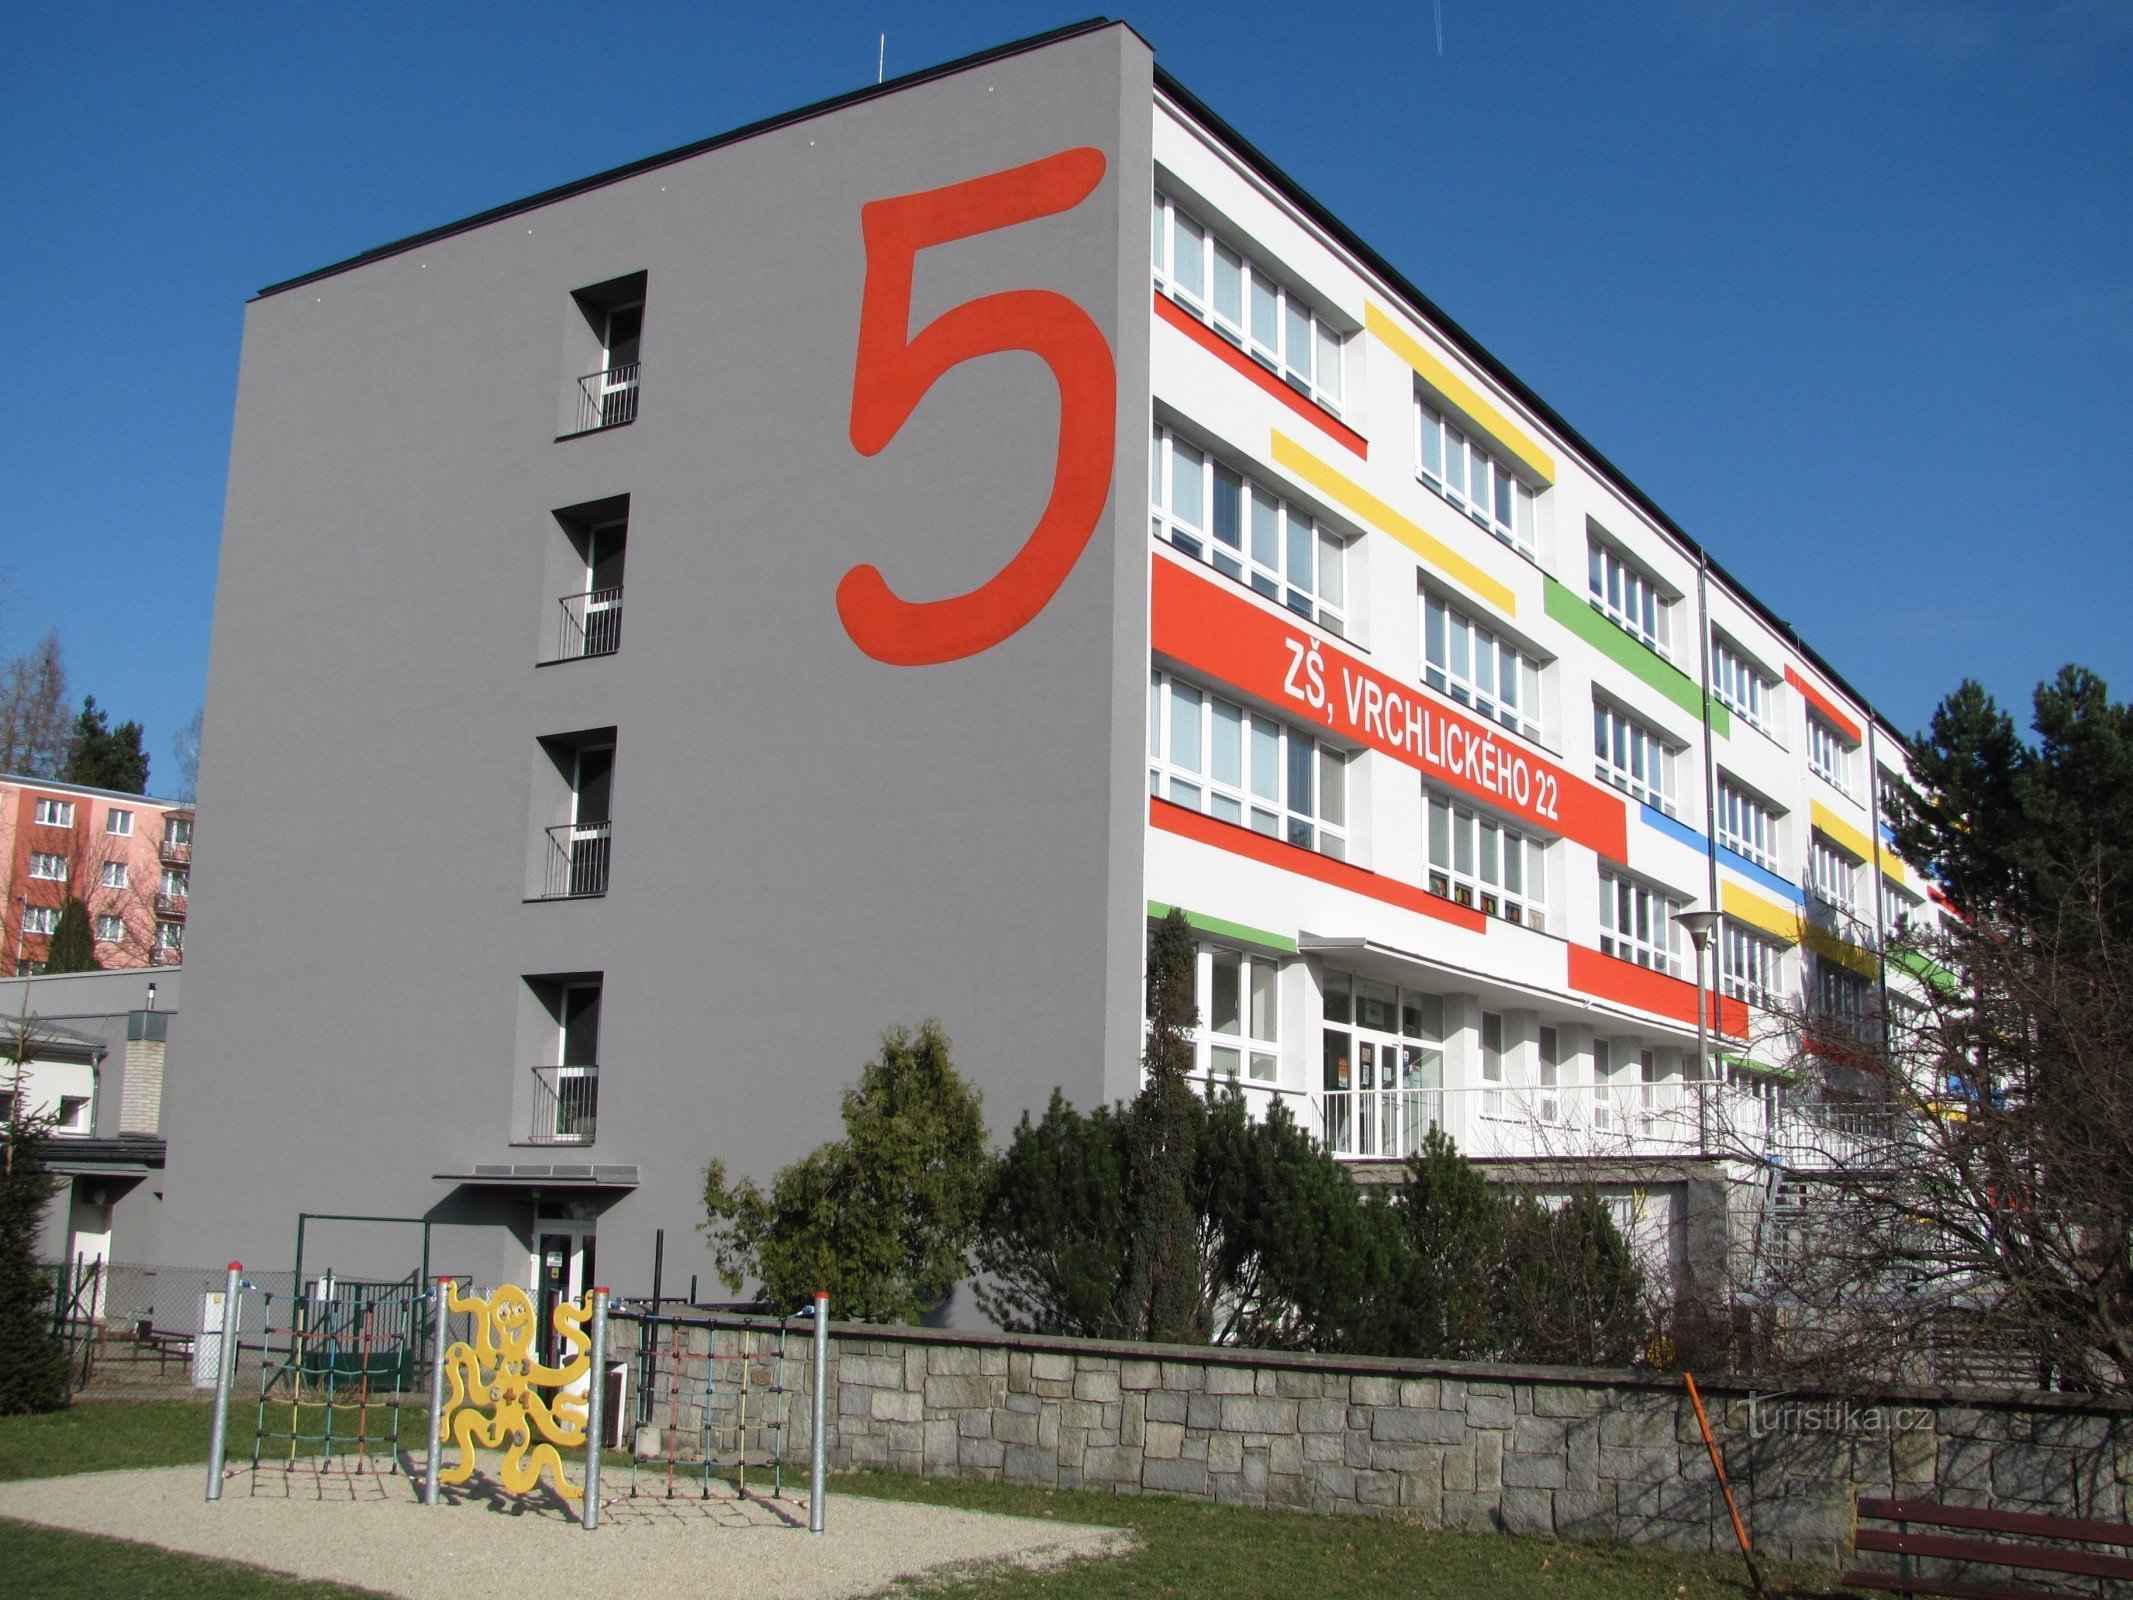 Šumperk – edificio della 5a scuola elementare e parco giochi 8D per bambini